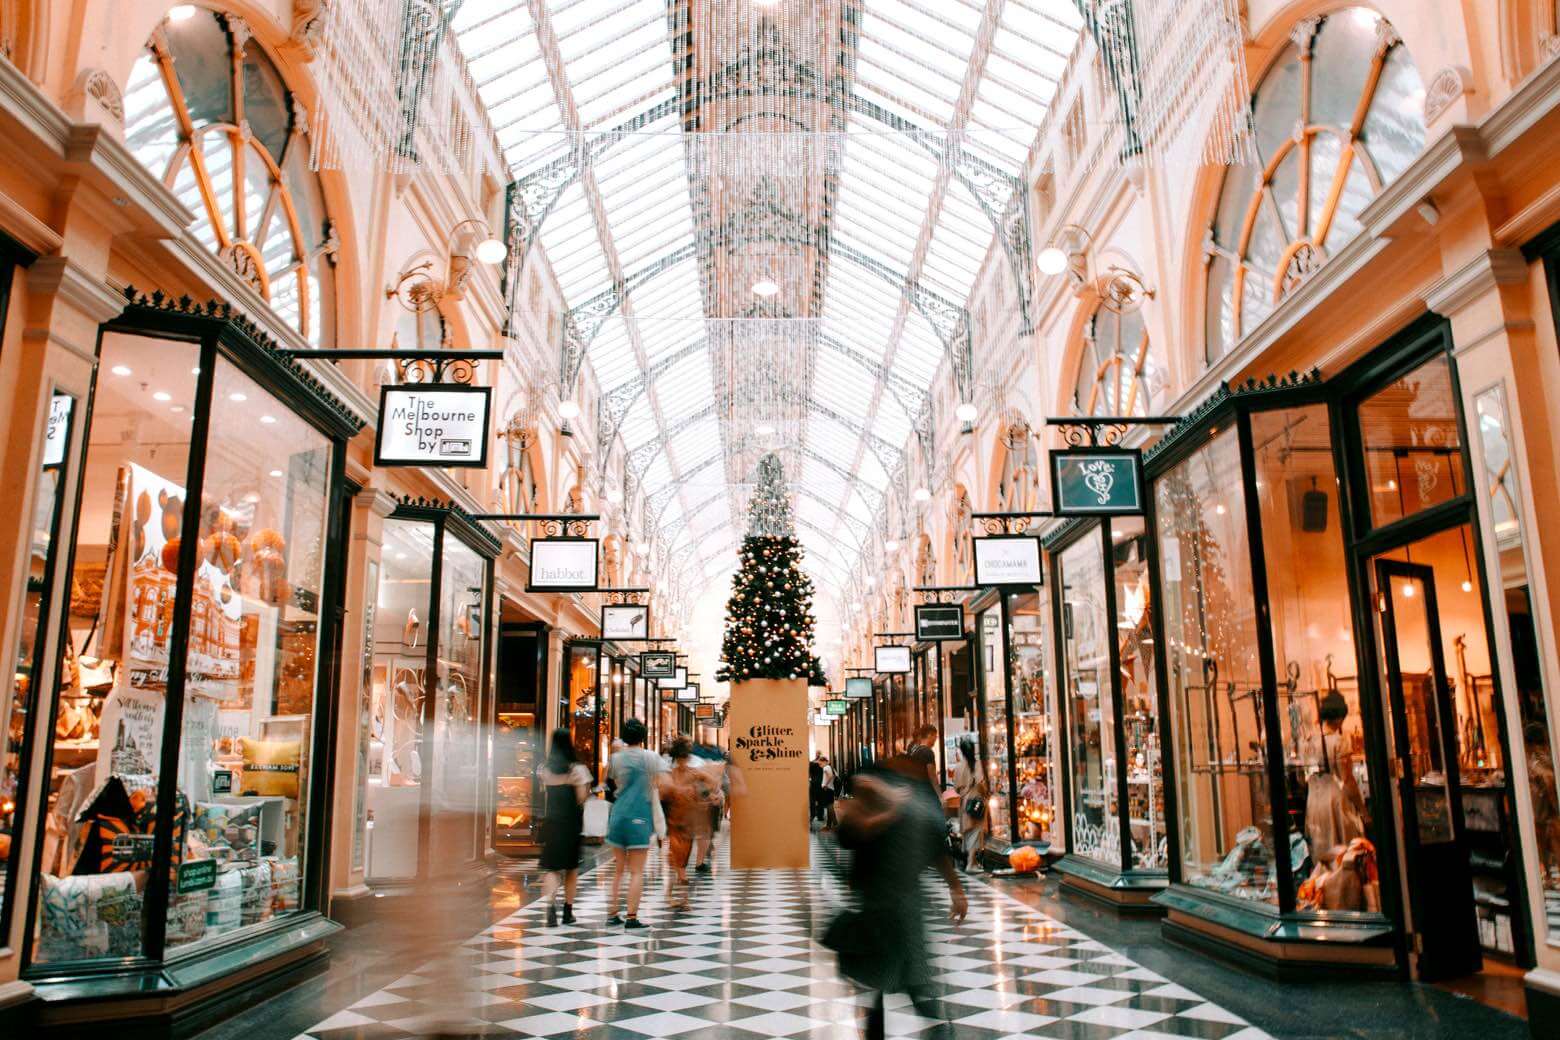 Bourke Street Mall in Melbourne